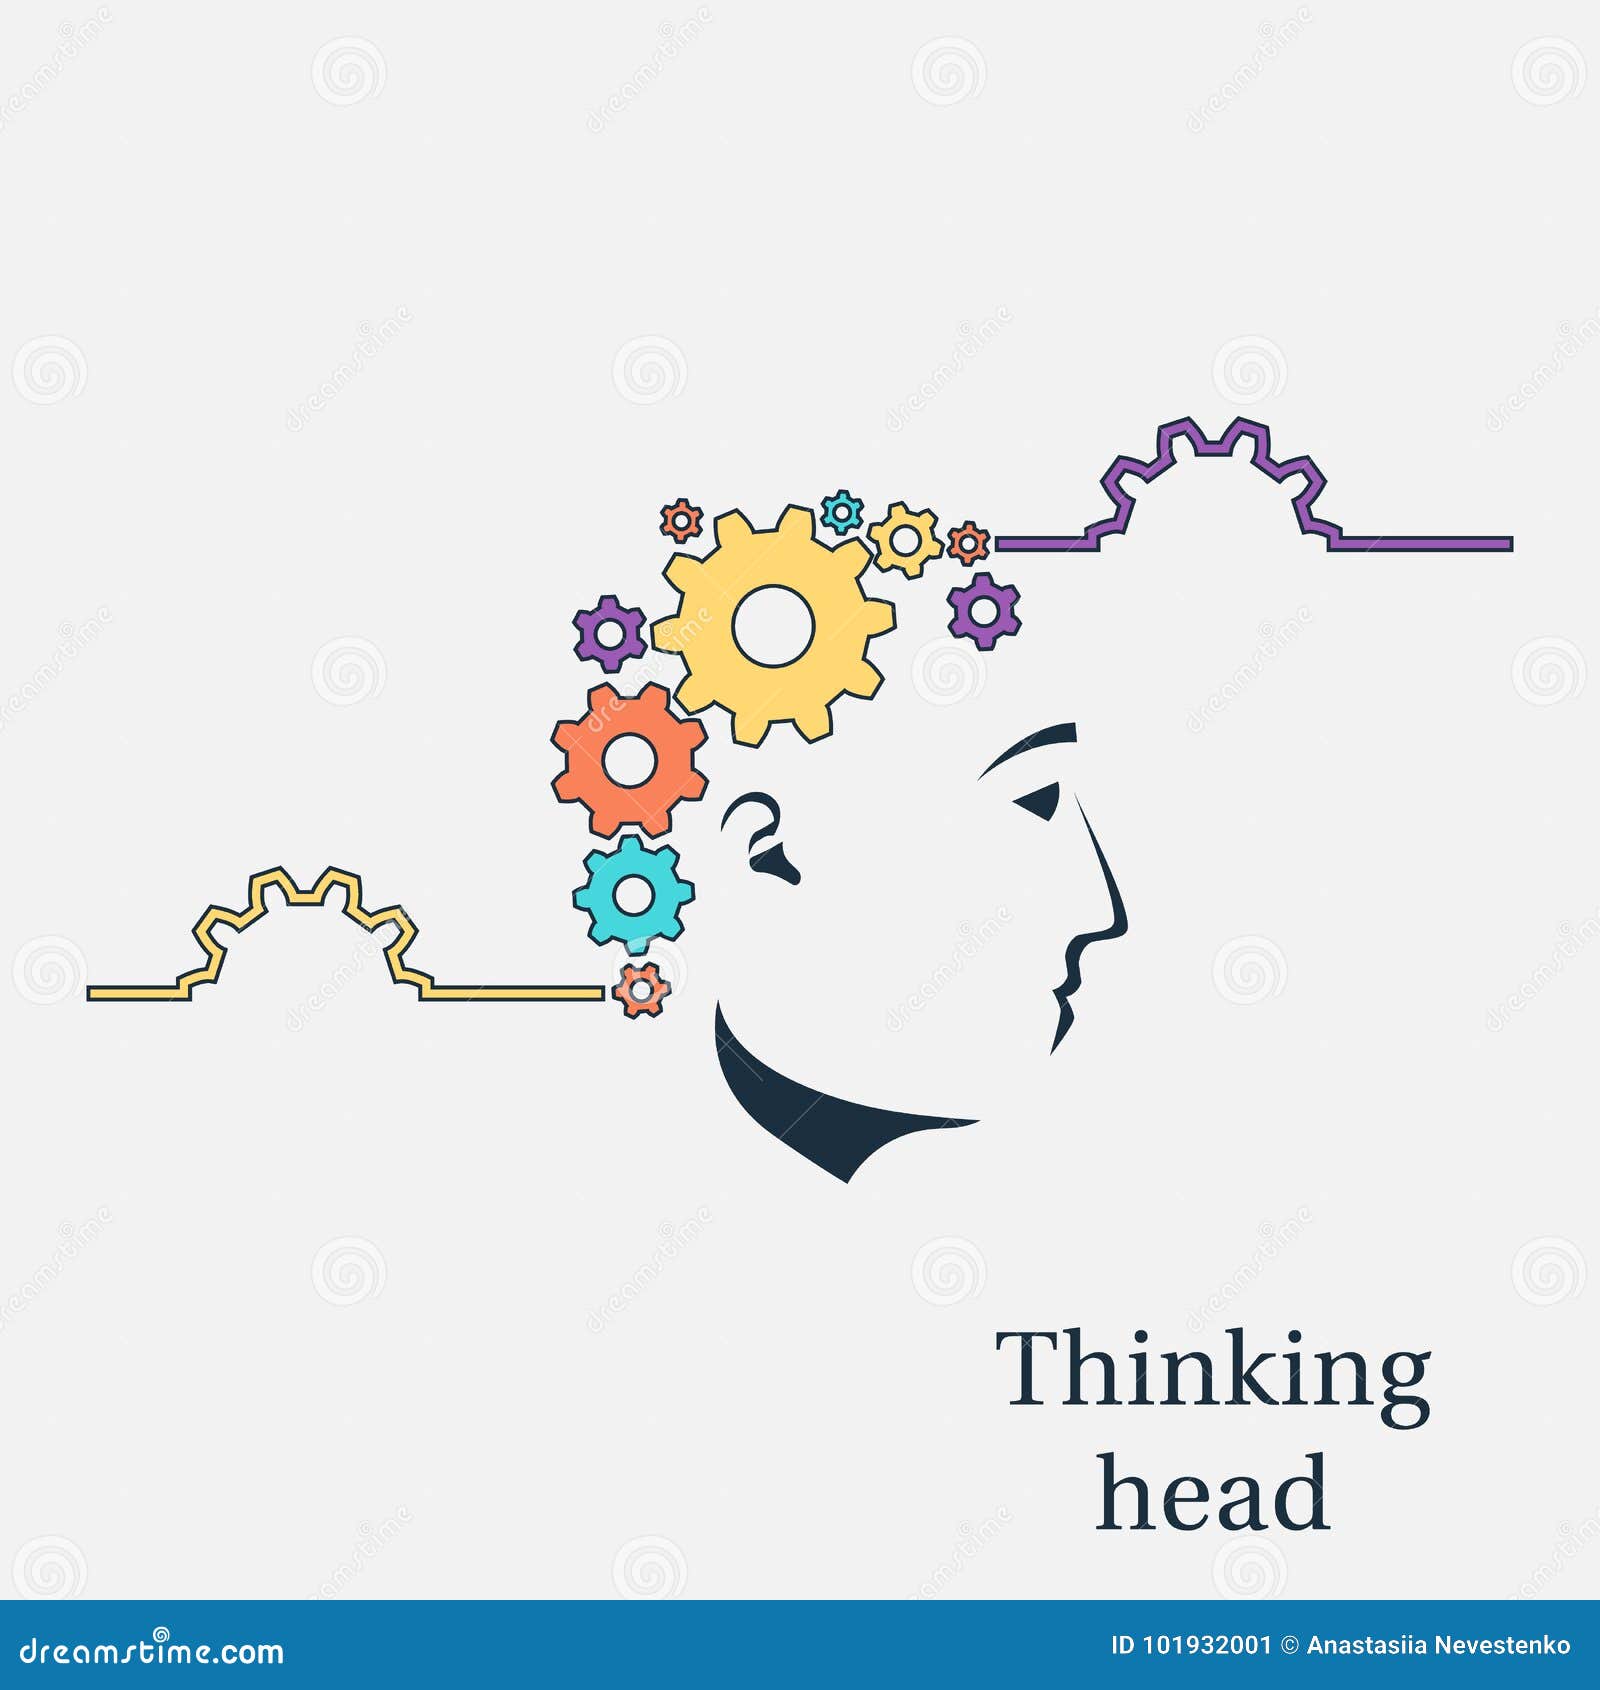 Thinking head vector stock vector. Illustration of brainstorm - 101932001